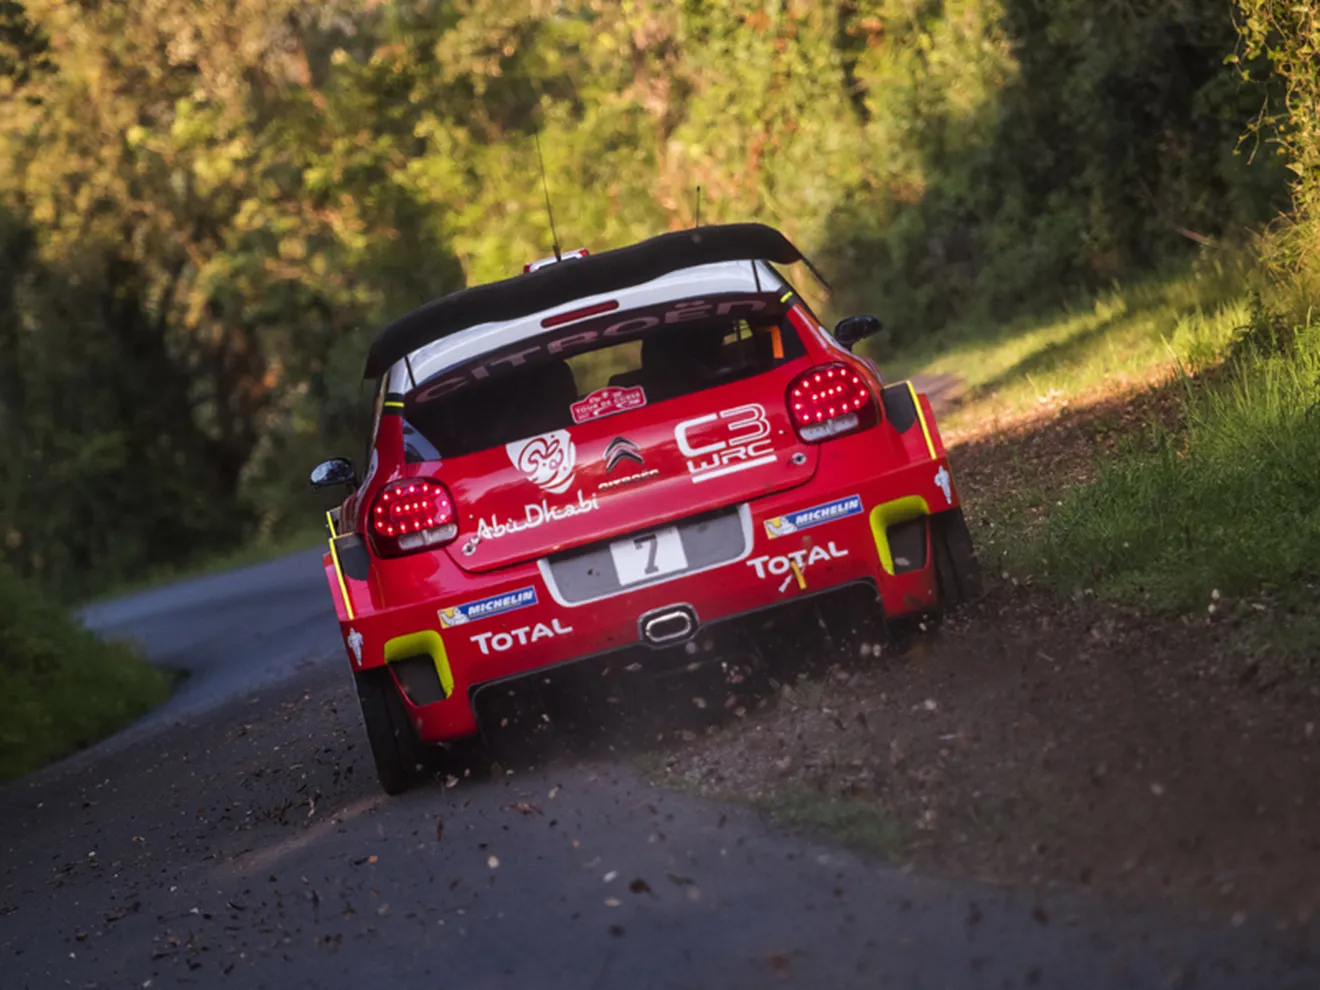 'Regreso al pasado' como inflexión del Citroën C3 WRC